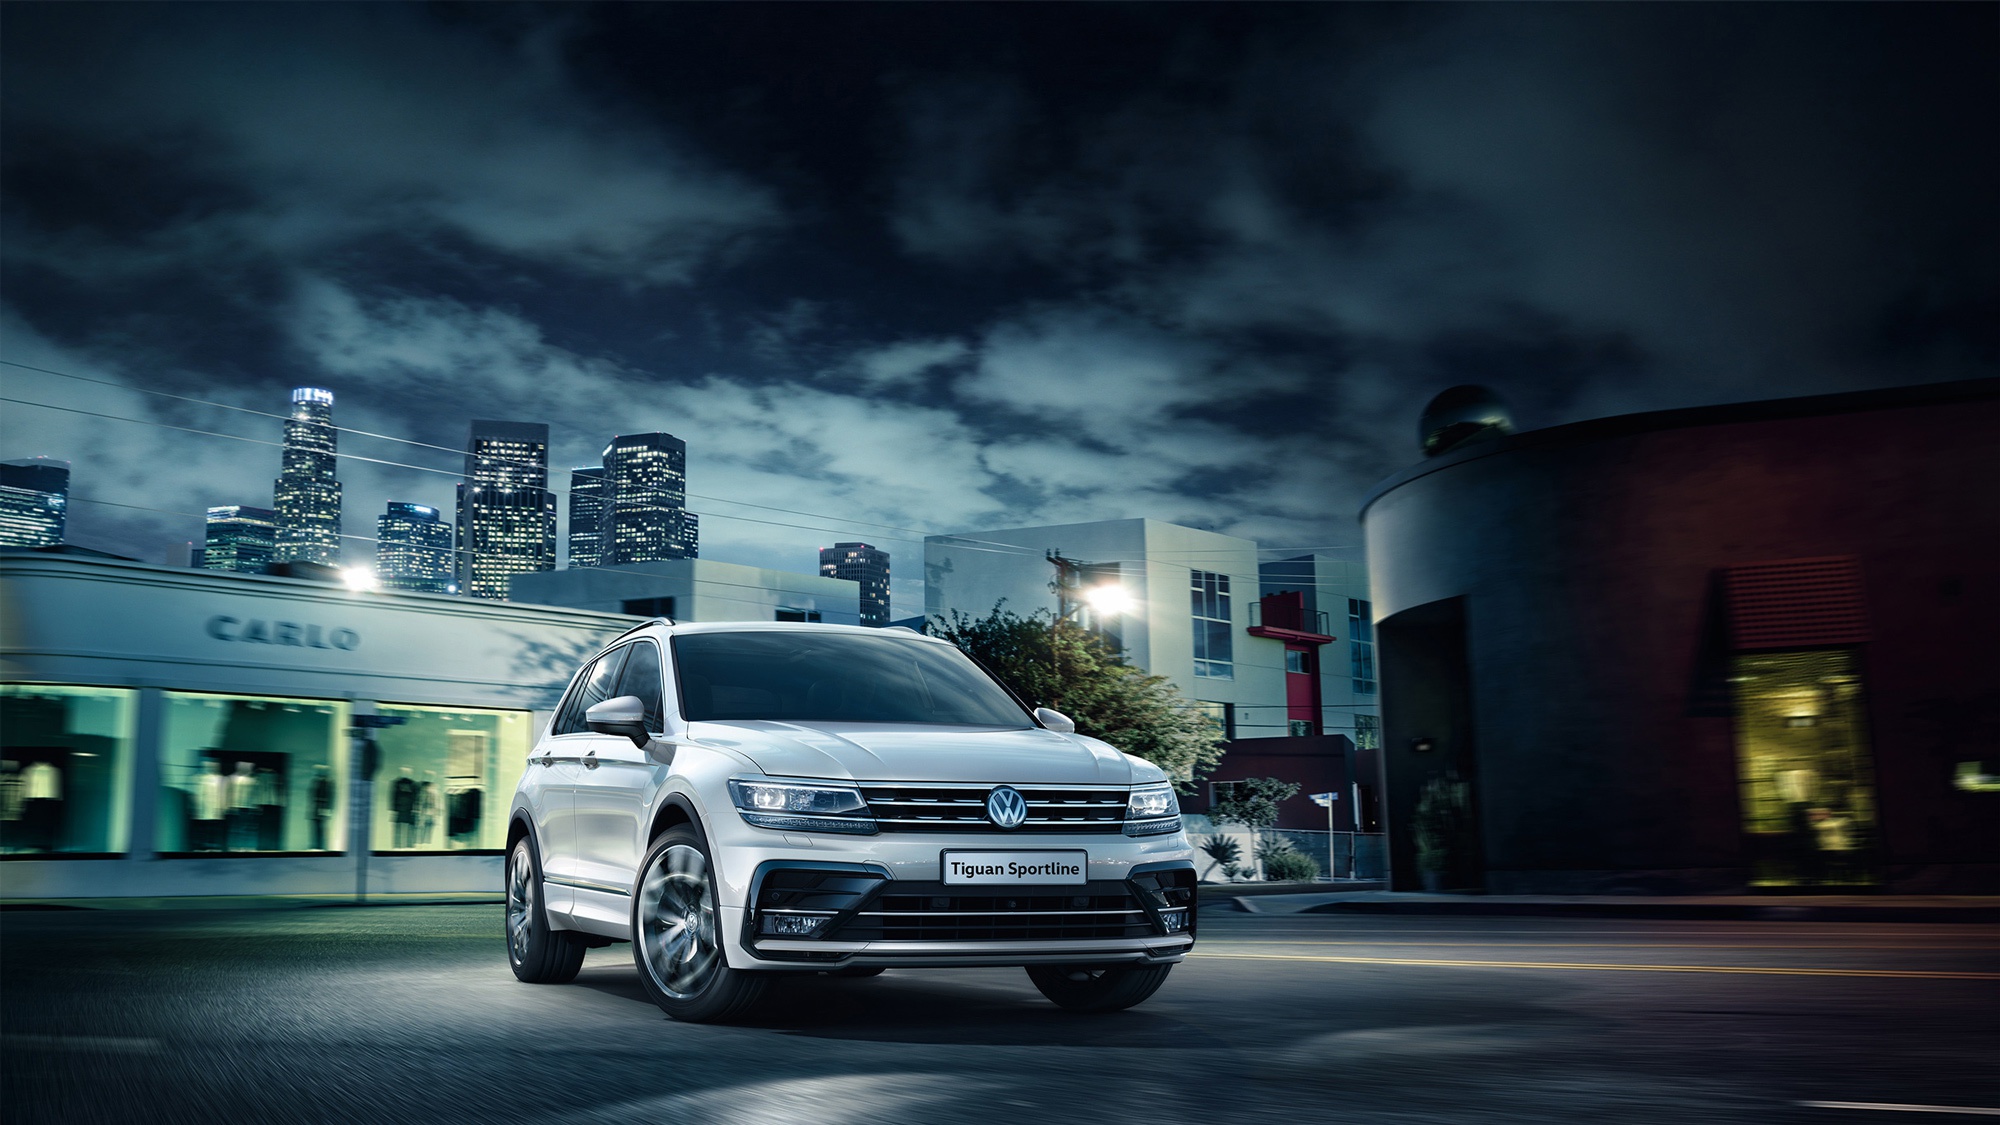 Vehicles Volkswagen Tiguan HD Wallpaper | Background Image